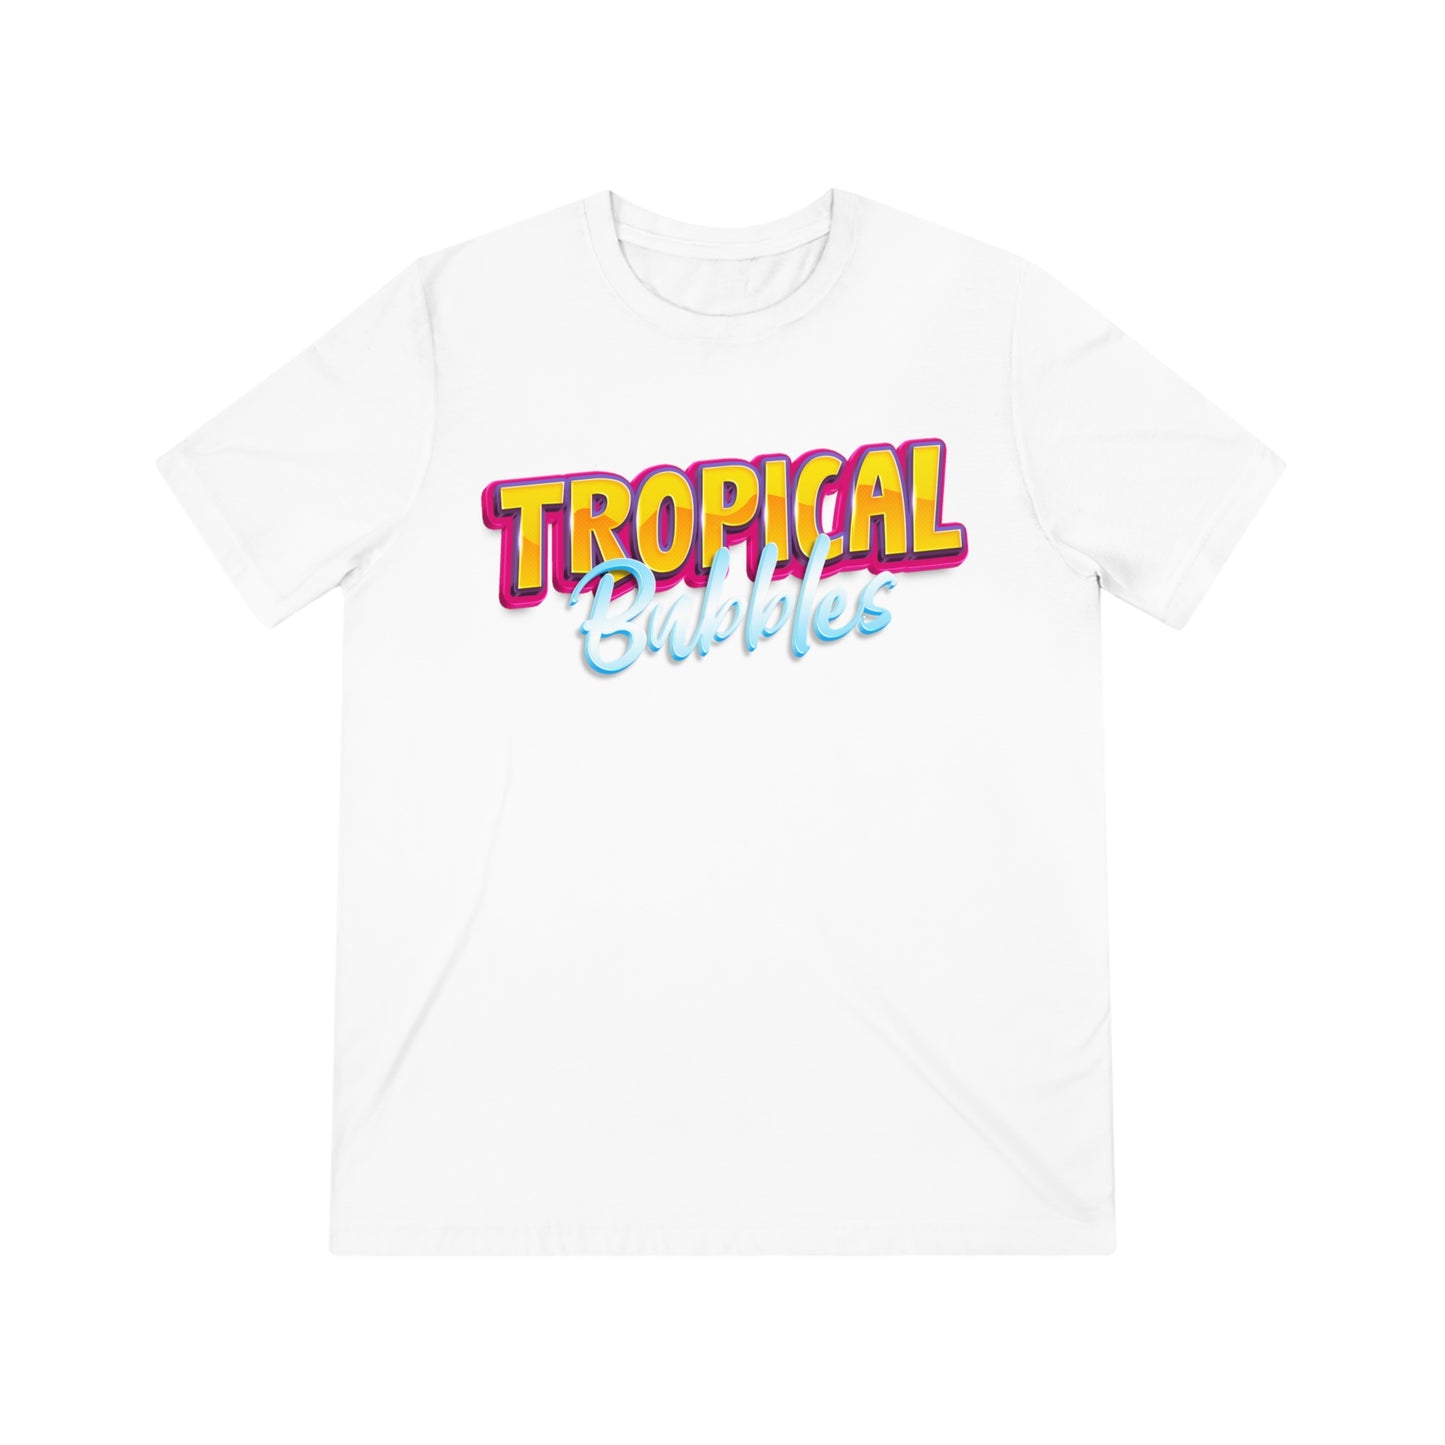 Tropical Bubbles - T-Shirt